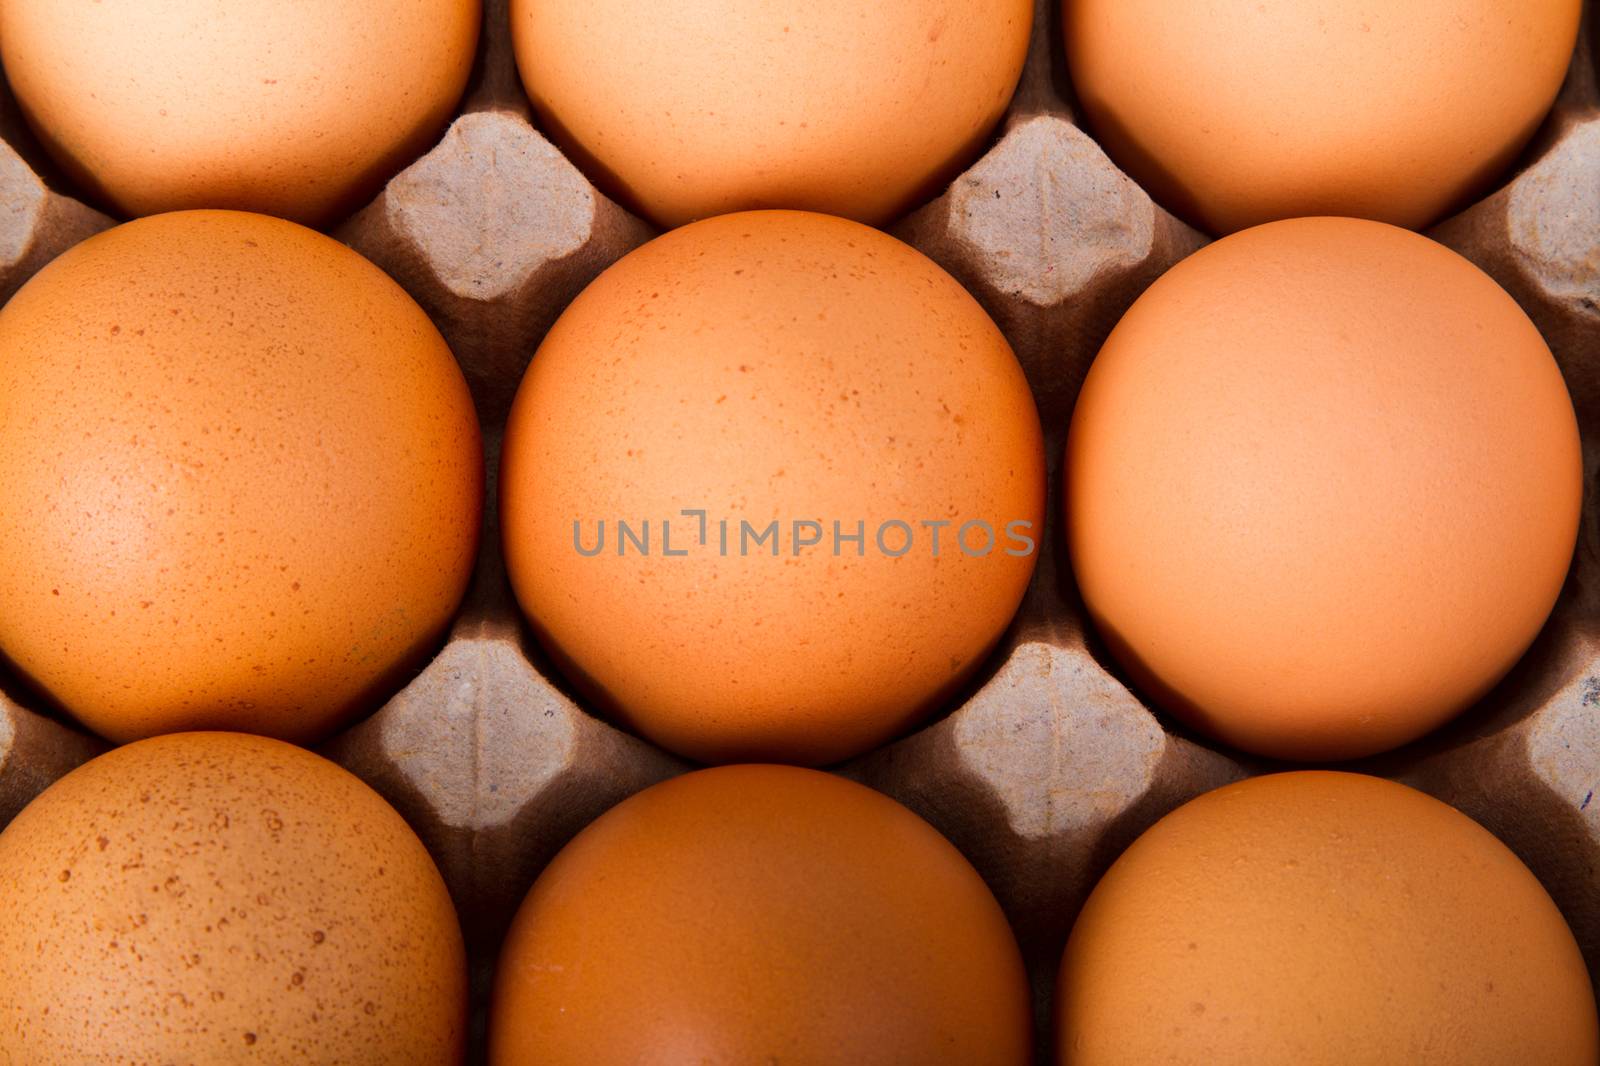 Brown eggs in a carton by grigorenko